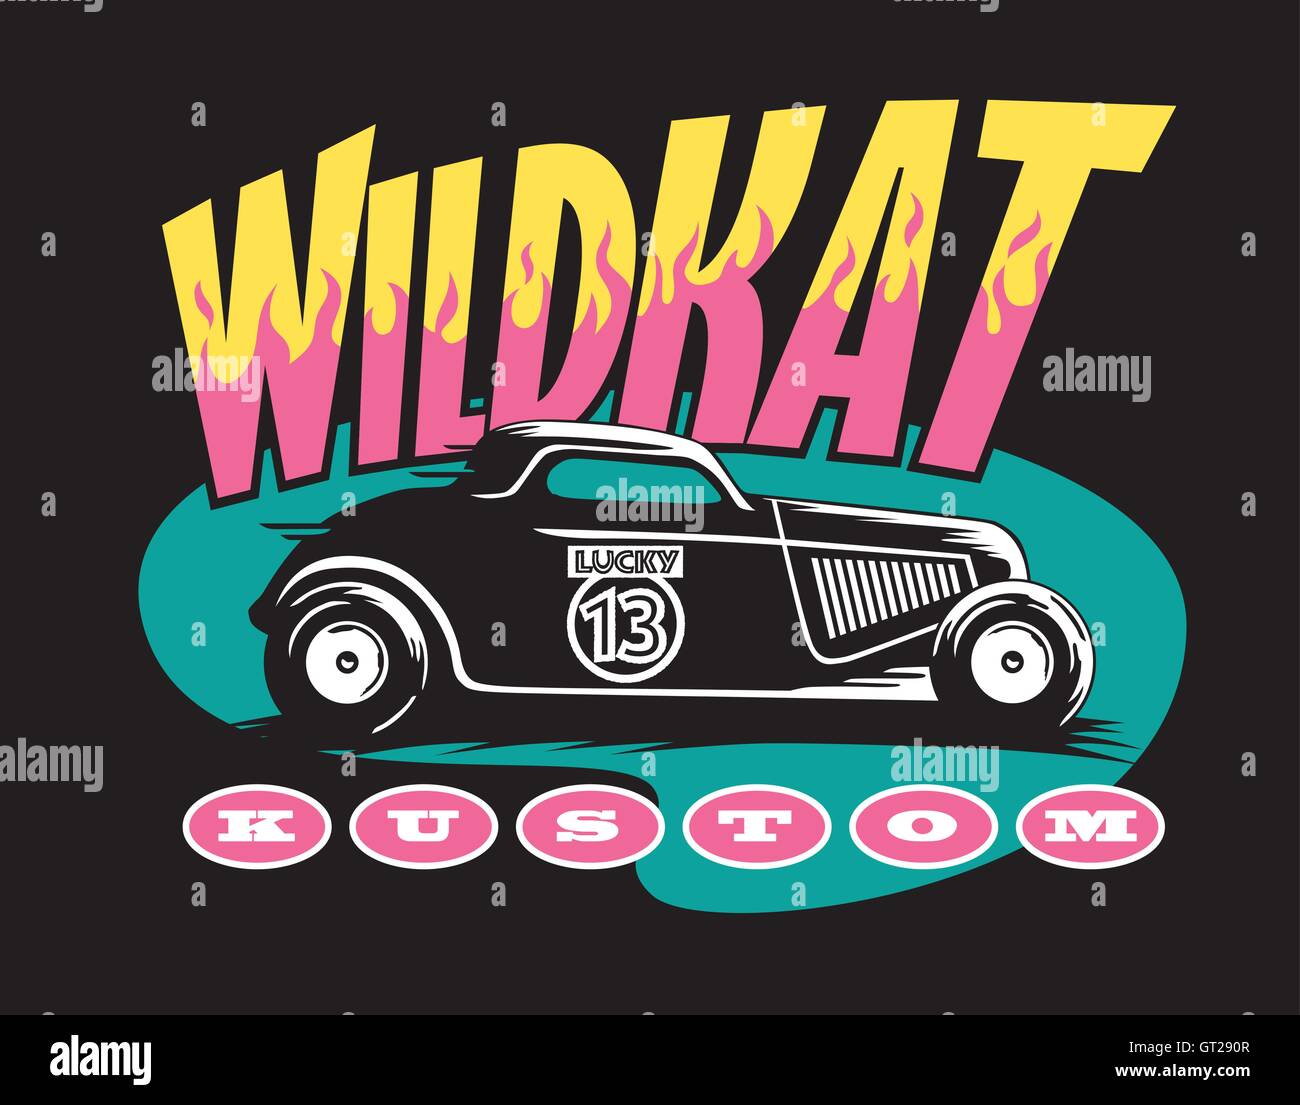 Wildkat Kustom hot rod design. Logo rétro cool avec l'ancienne école et de lettrage voiture personnalisée avec des flammes. Illustration de Vecteur